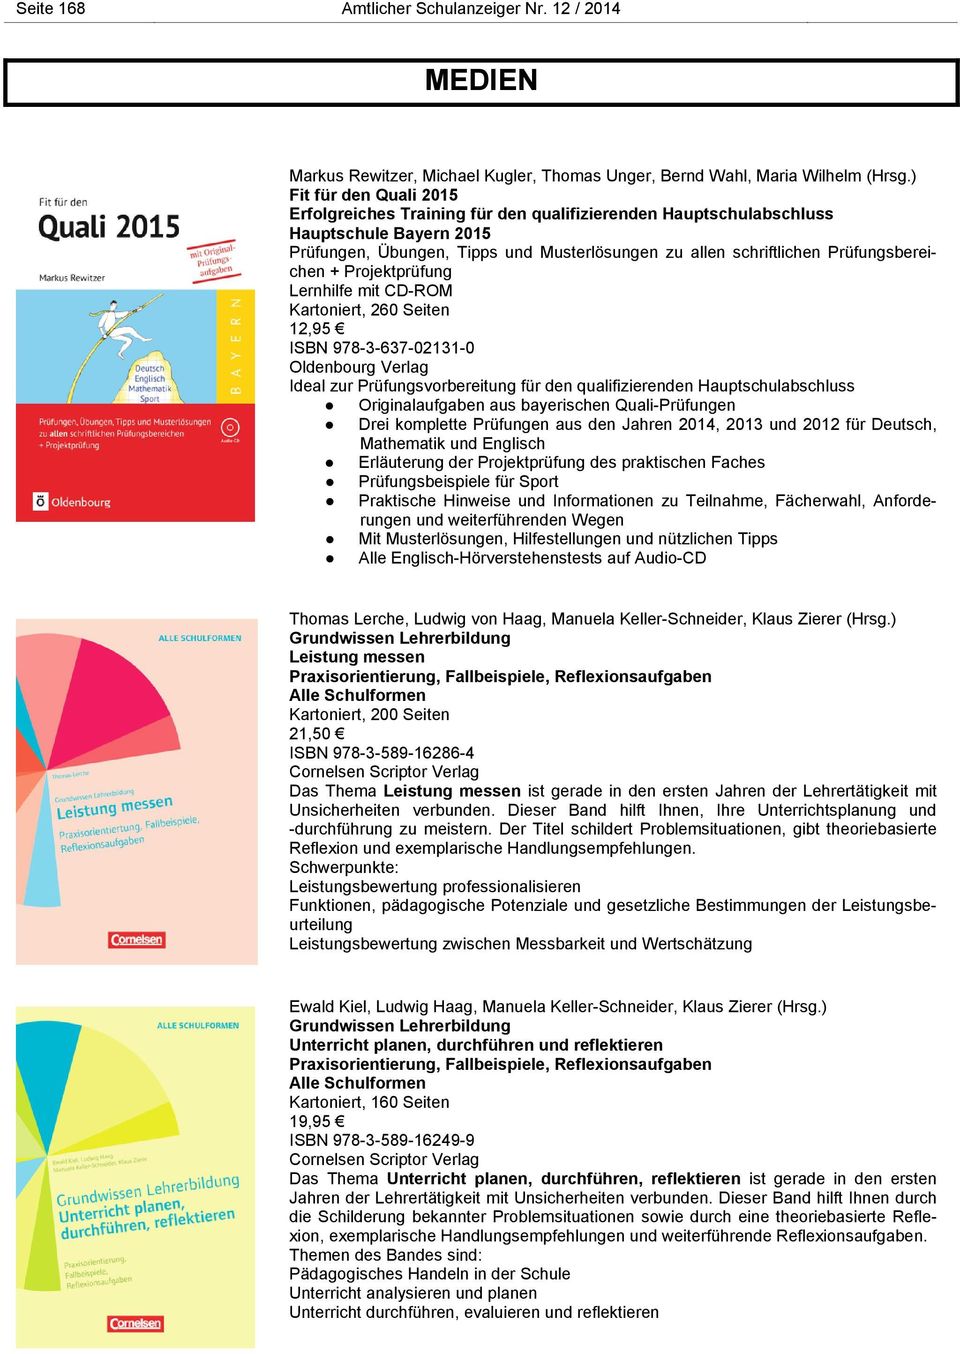 Prüfungsbereichen + Projektprüfung Lernhilfe mit CD-ROM Kartoniert, 260 Seiten 12,95 ISBN 978-3-637-02131-0 Oldenbourg Verlag Ideal zur Prüfungsvorbereitung für den qualifizierenden